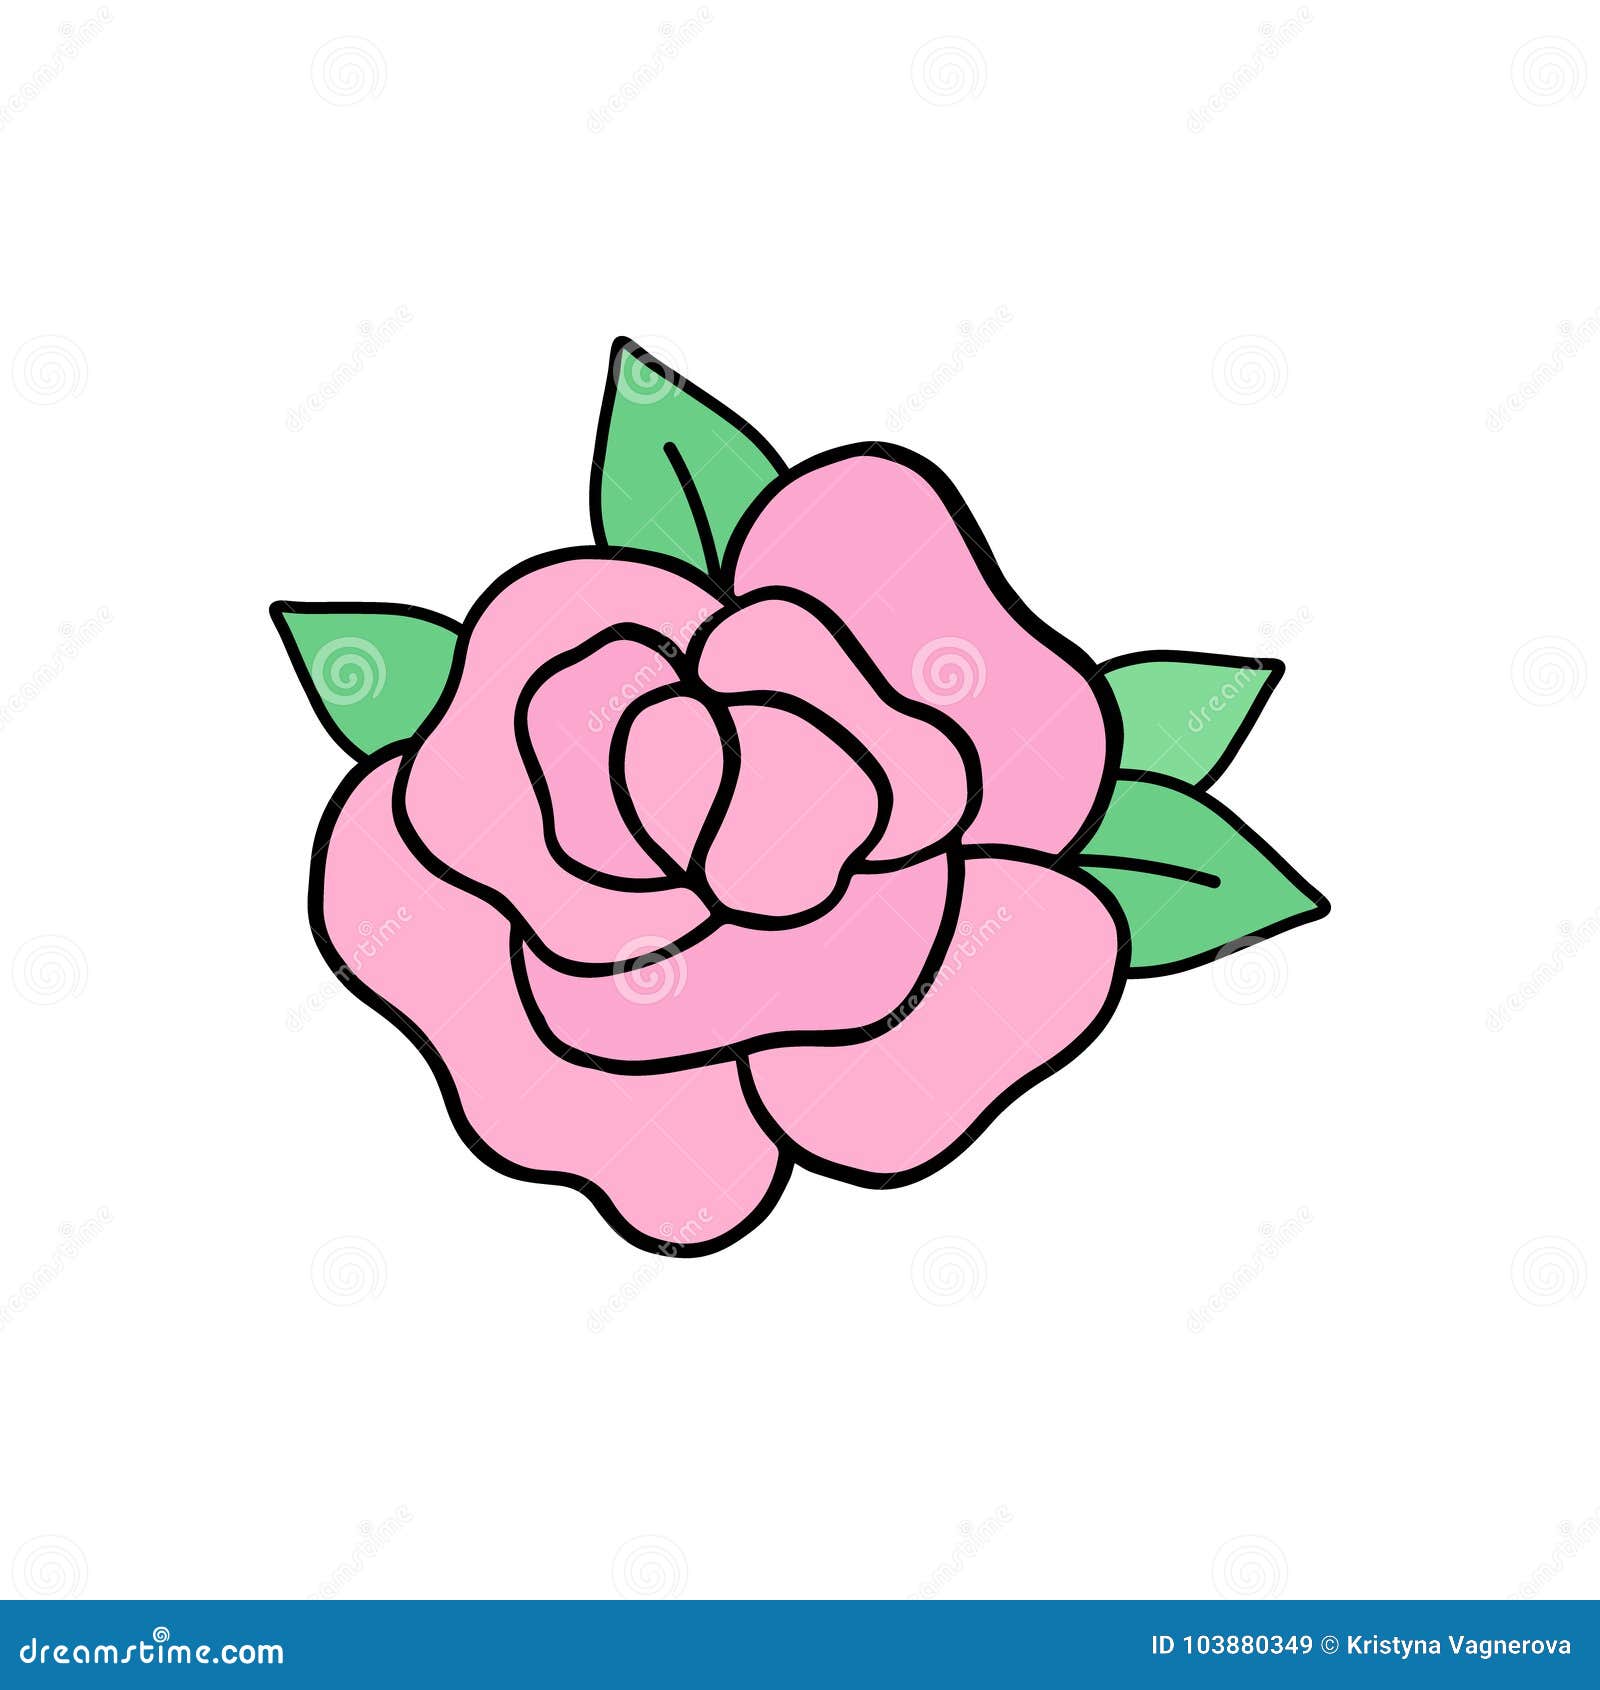 Como desenhar uma Rosa Kawaii - How to draw a Rose Kawaii 